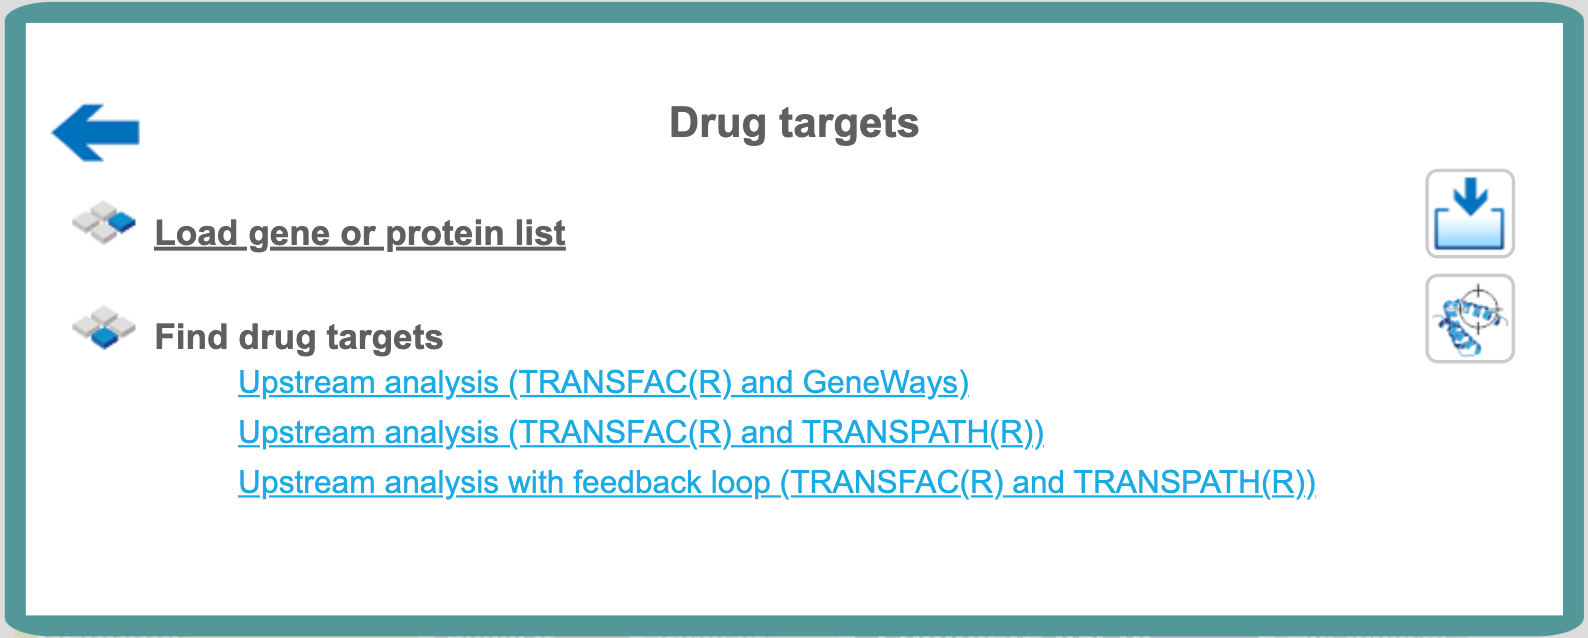 _images/drug_targets1.png